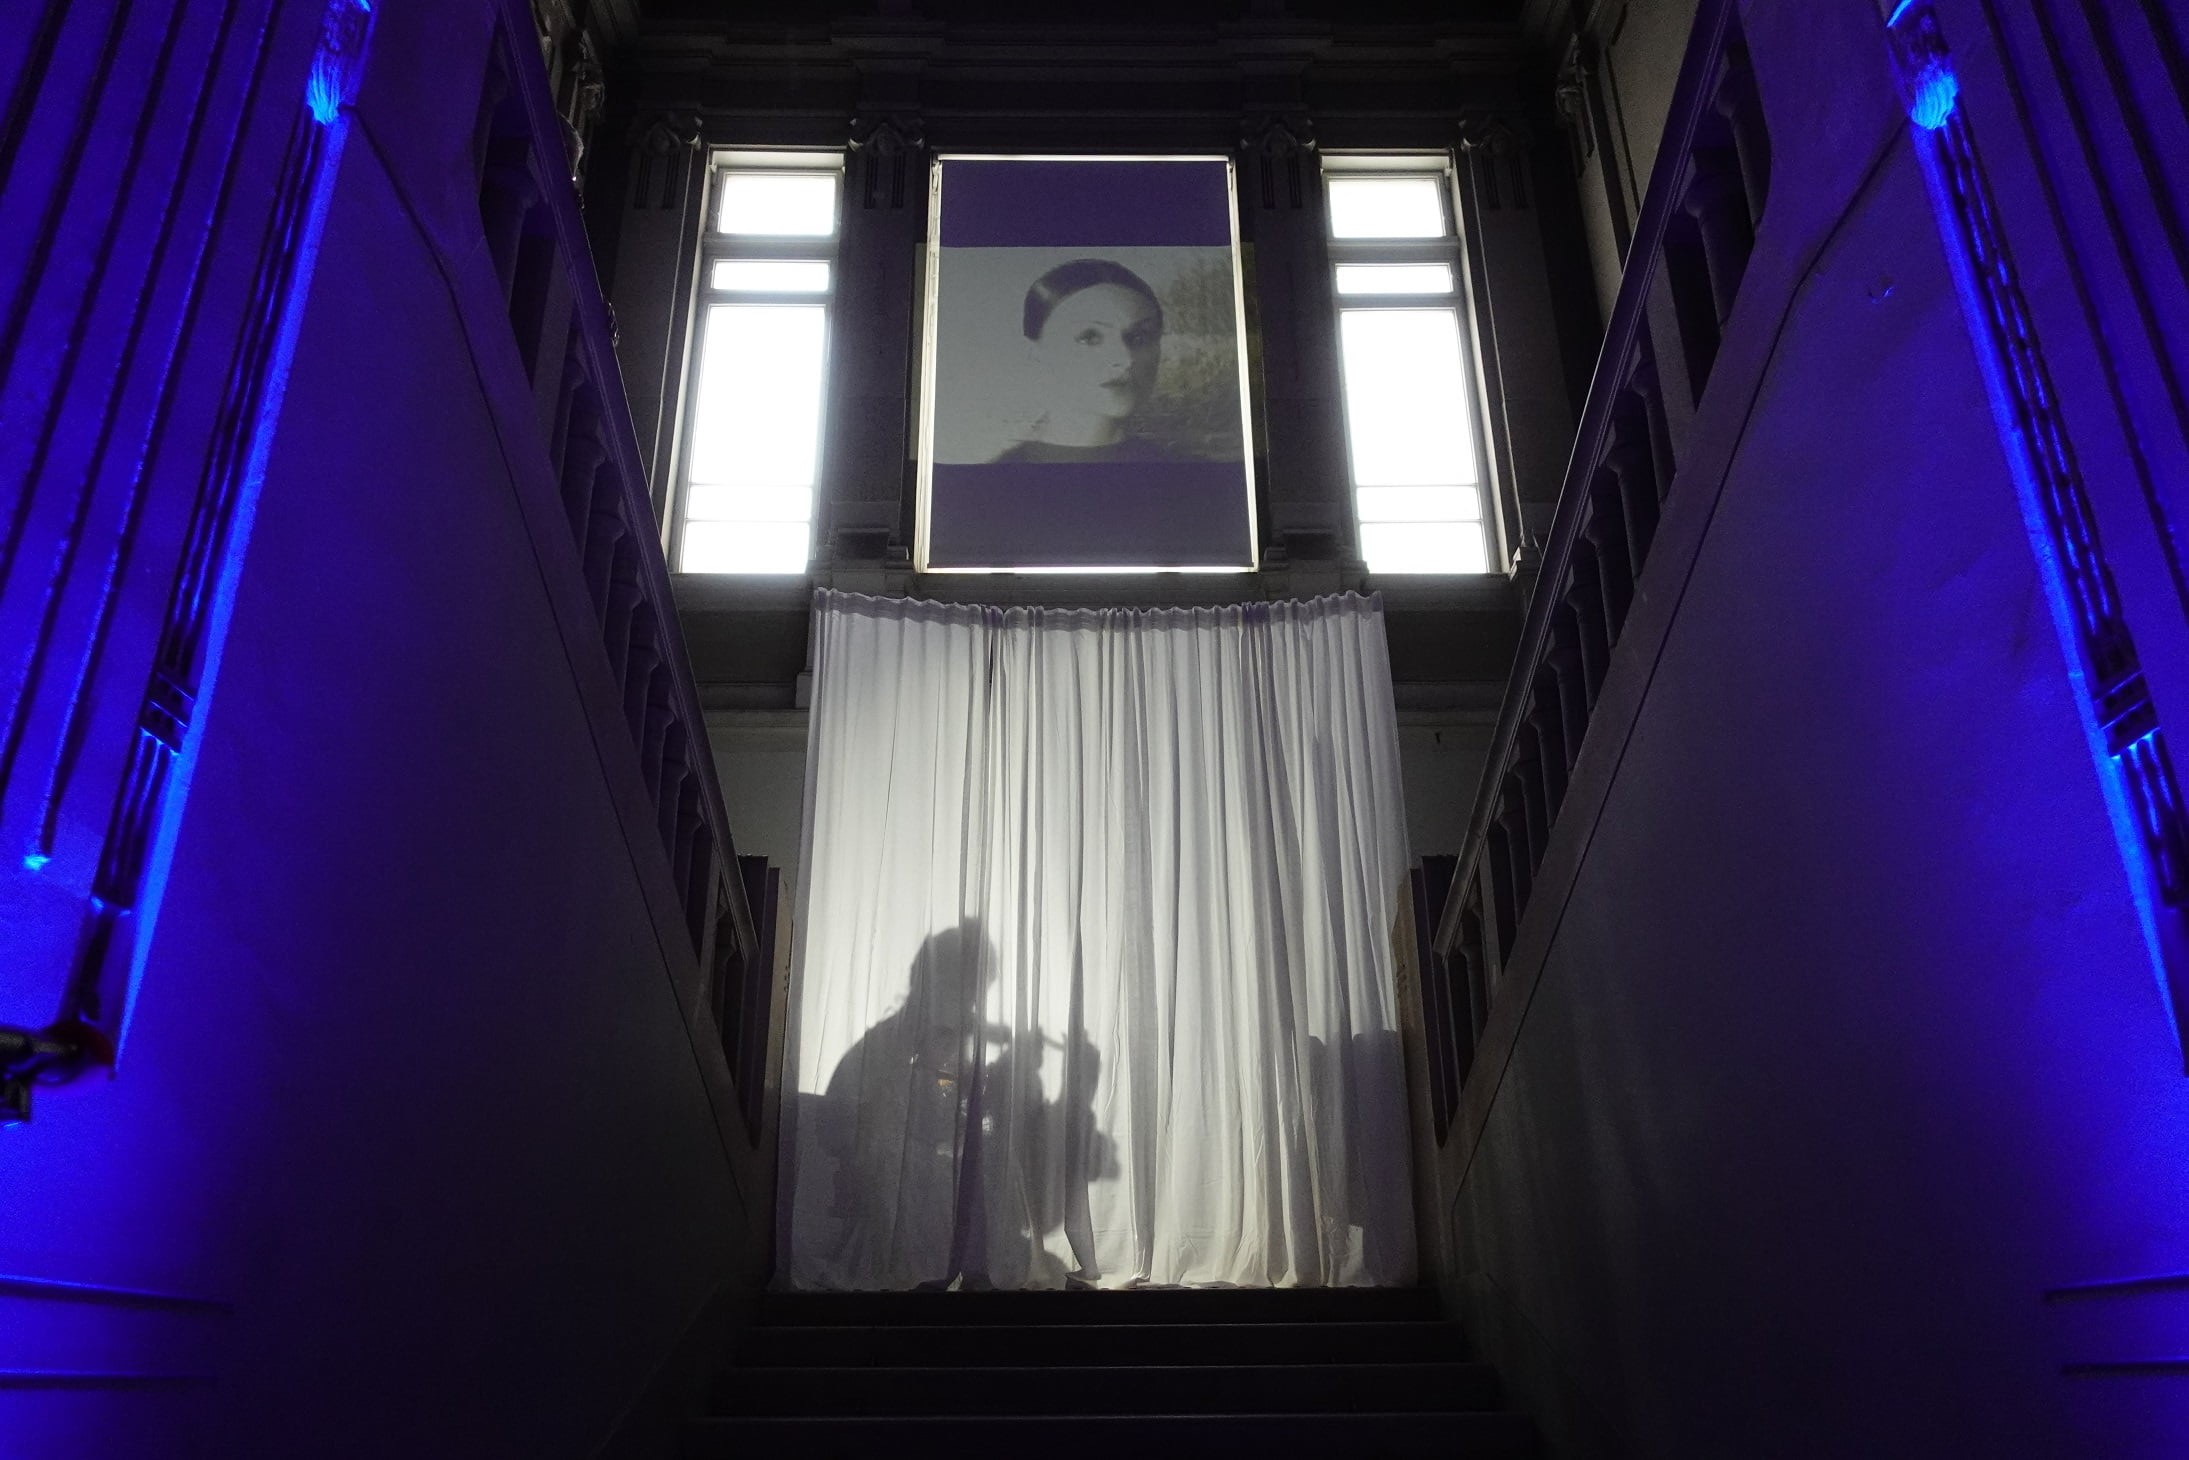 Ova slika prikazuje stubište osvijetljeno plavim svjetlom s bijelim zastorima koji prekrivaju prozor na vrhu. Na zastorima se vidi sjena osobe. Stubište je obasjano plavim svjetlima duž zidova, stvarajući mračnu i dramatičnu atmosferu. Iznad zastora nalazi se umjetničko djelo.